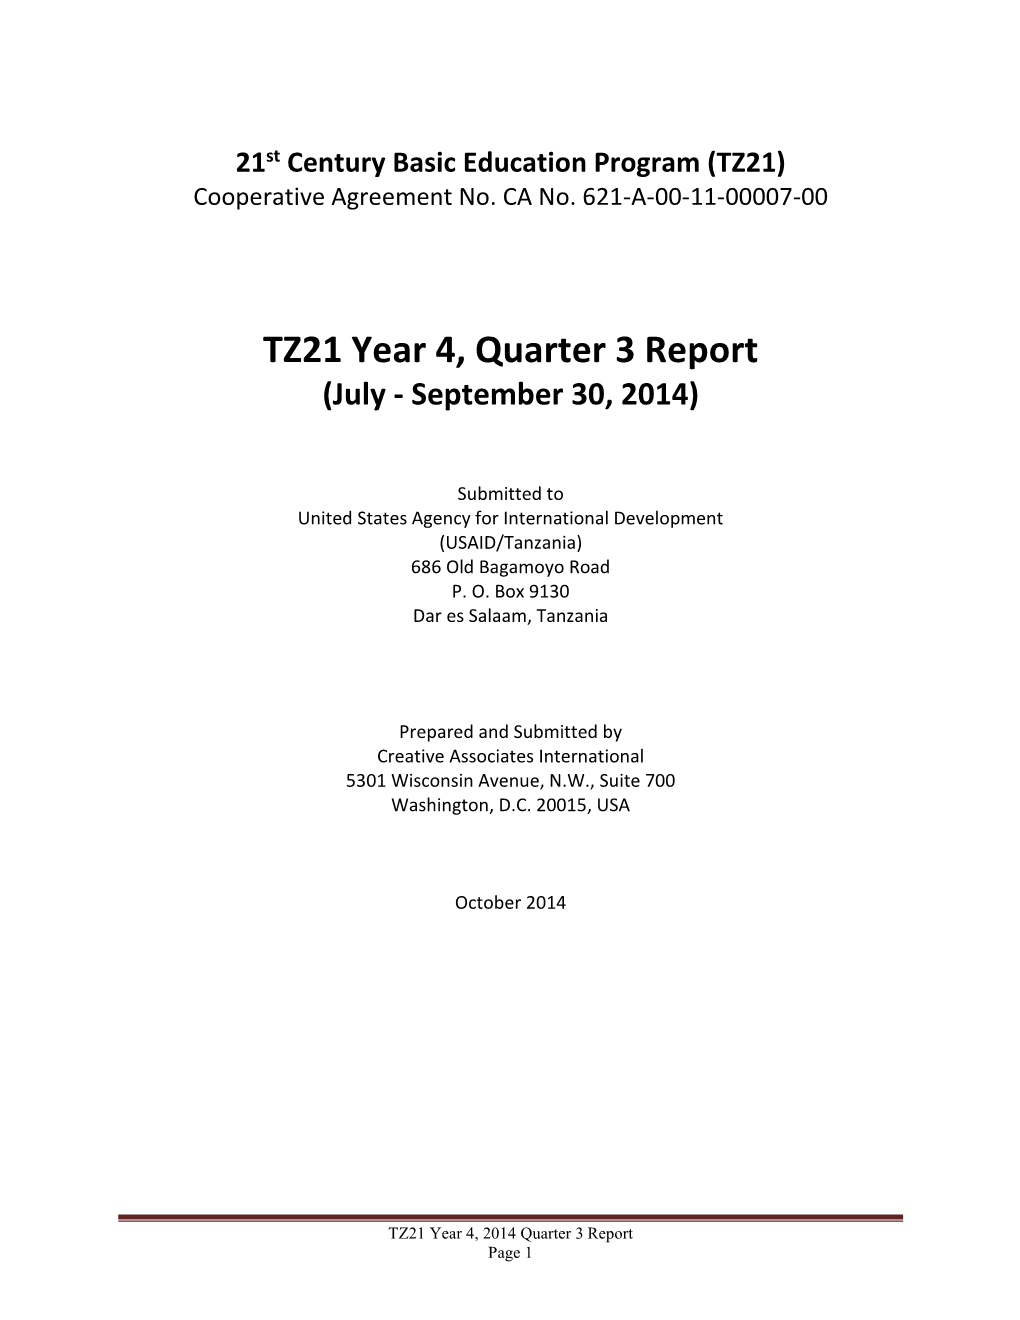 TZ21 Year 4, Quarter 3 Report (July - September 30, 2014)